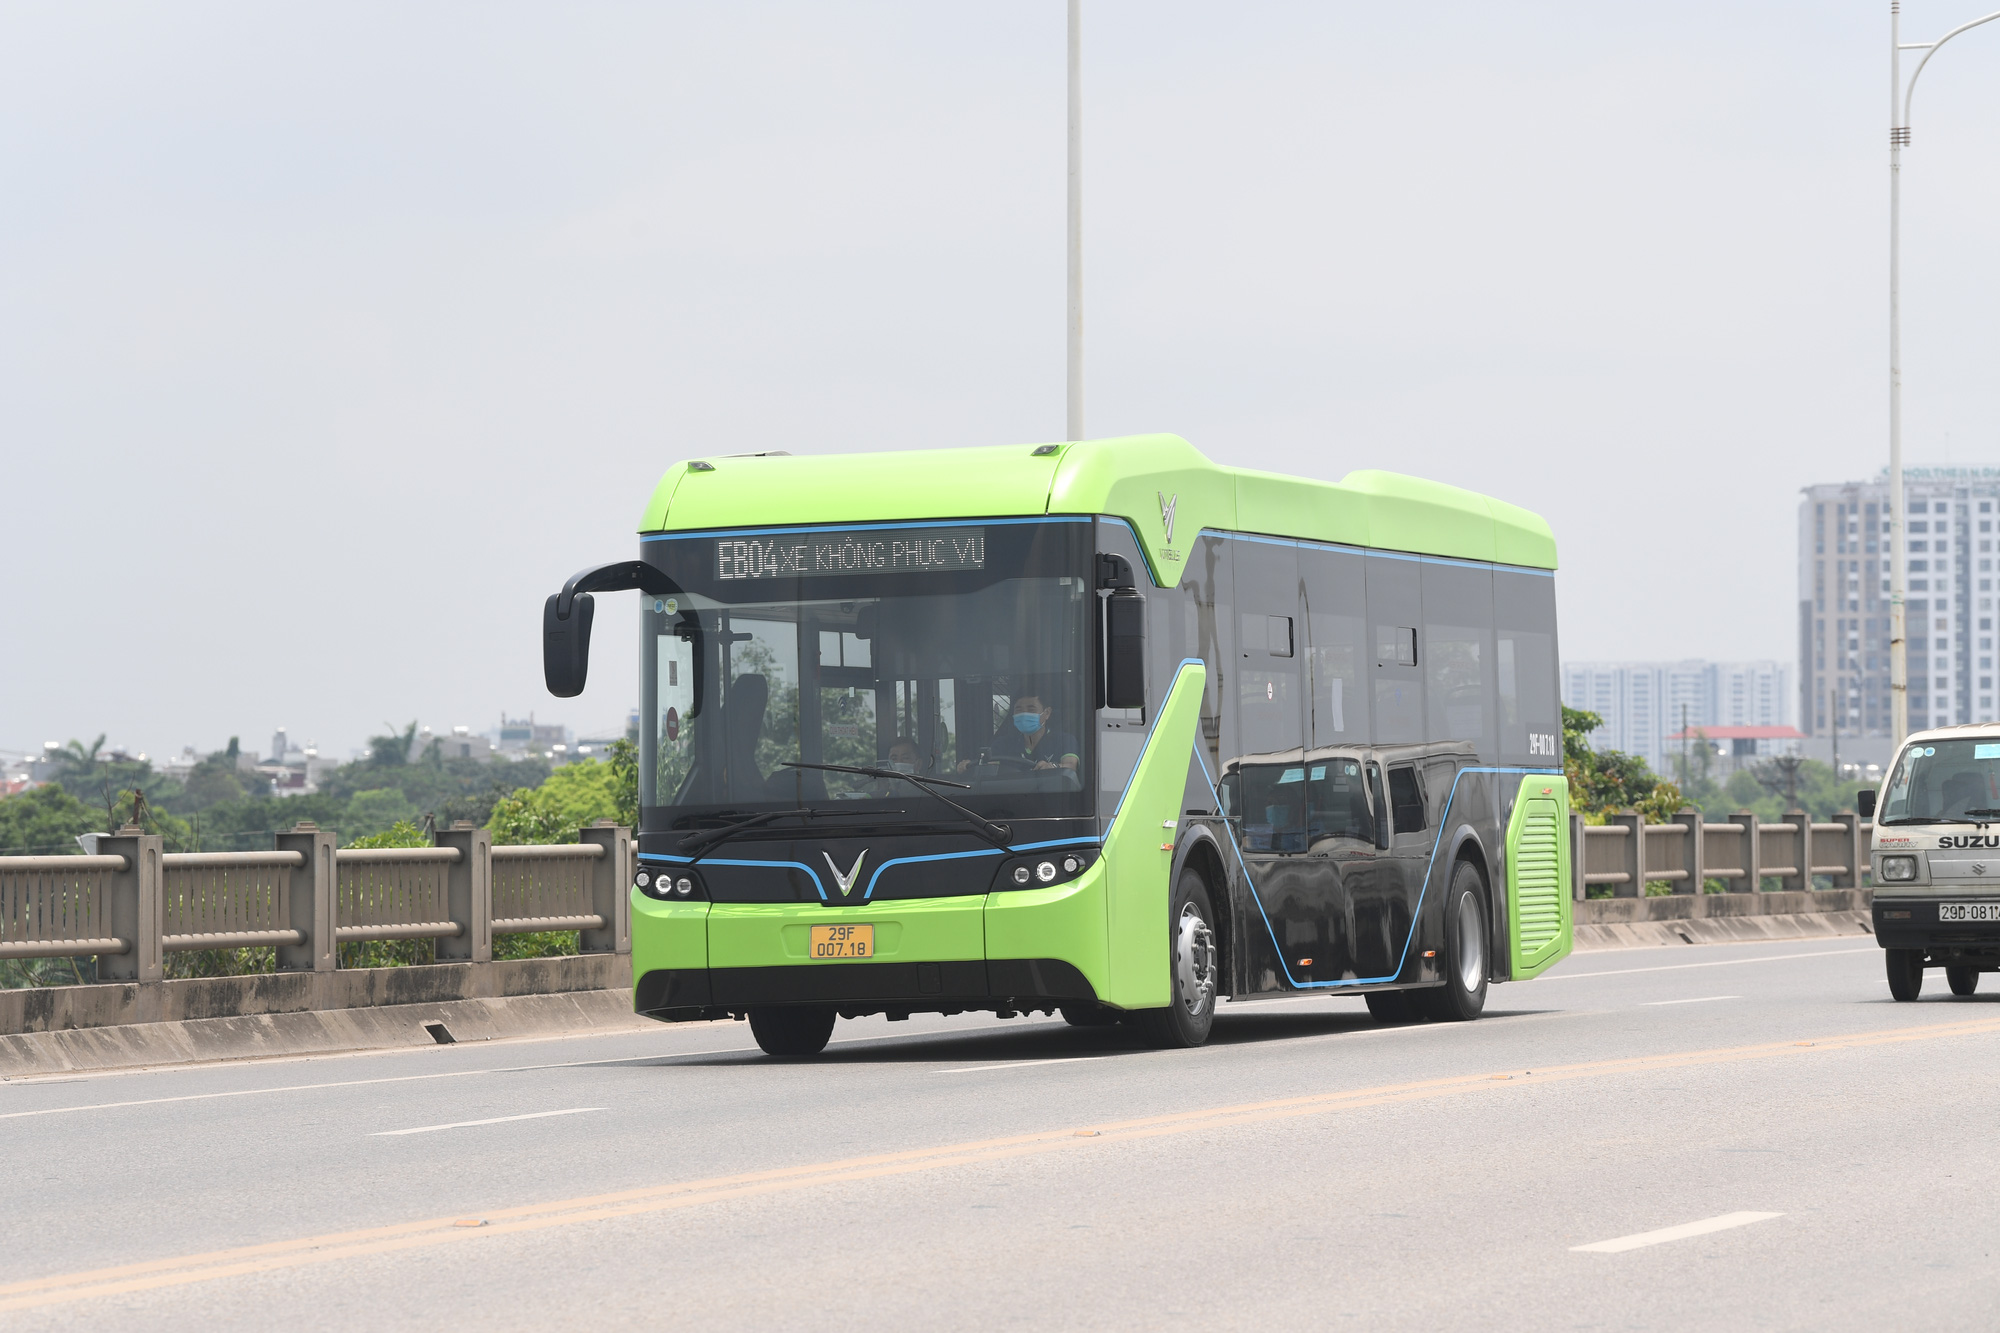 Chuẩn bị triển khai mua vé xe bus thông minh bằng điện thoại tại TPHCM   VTVVN